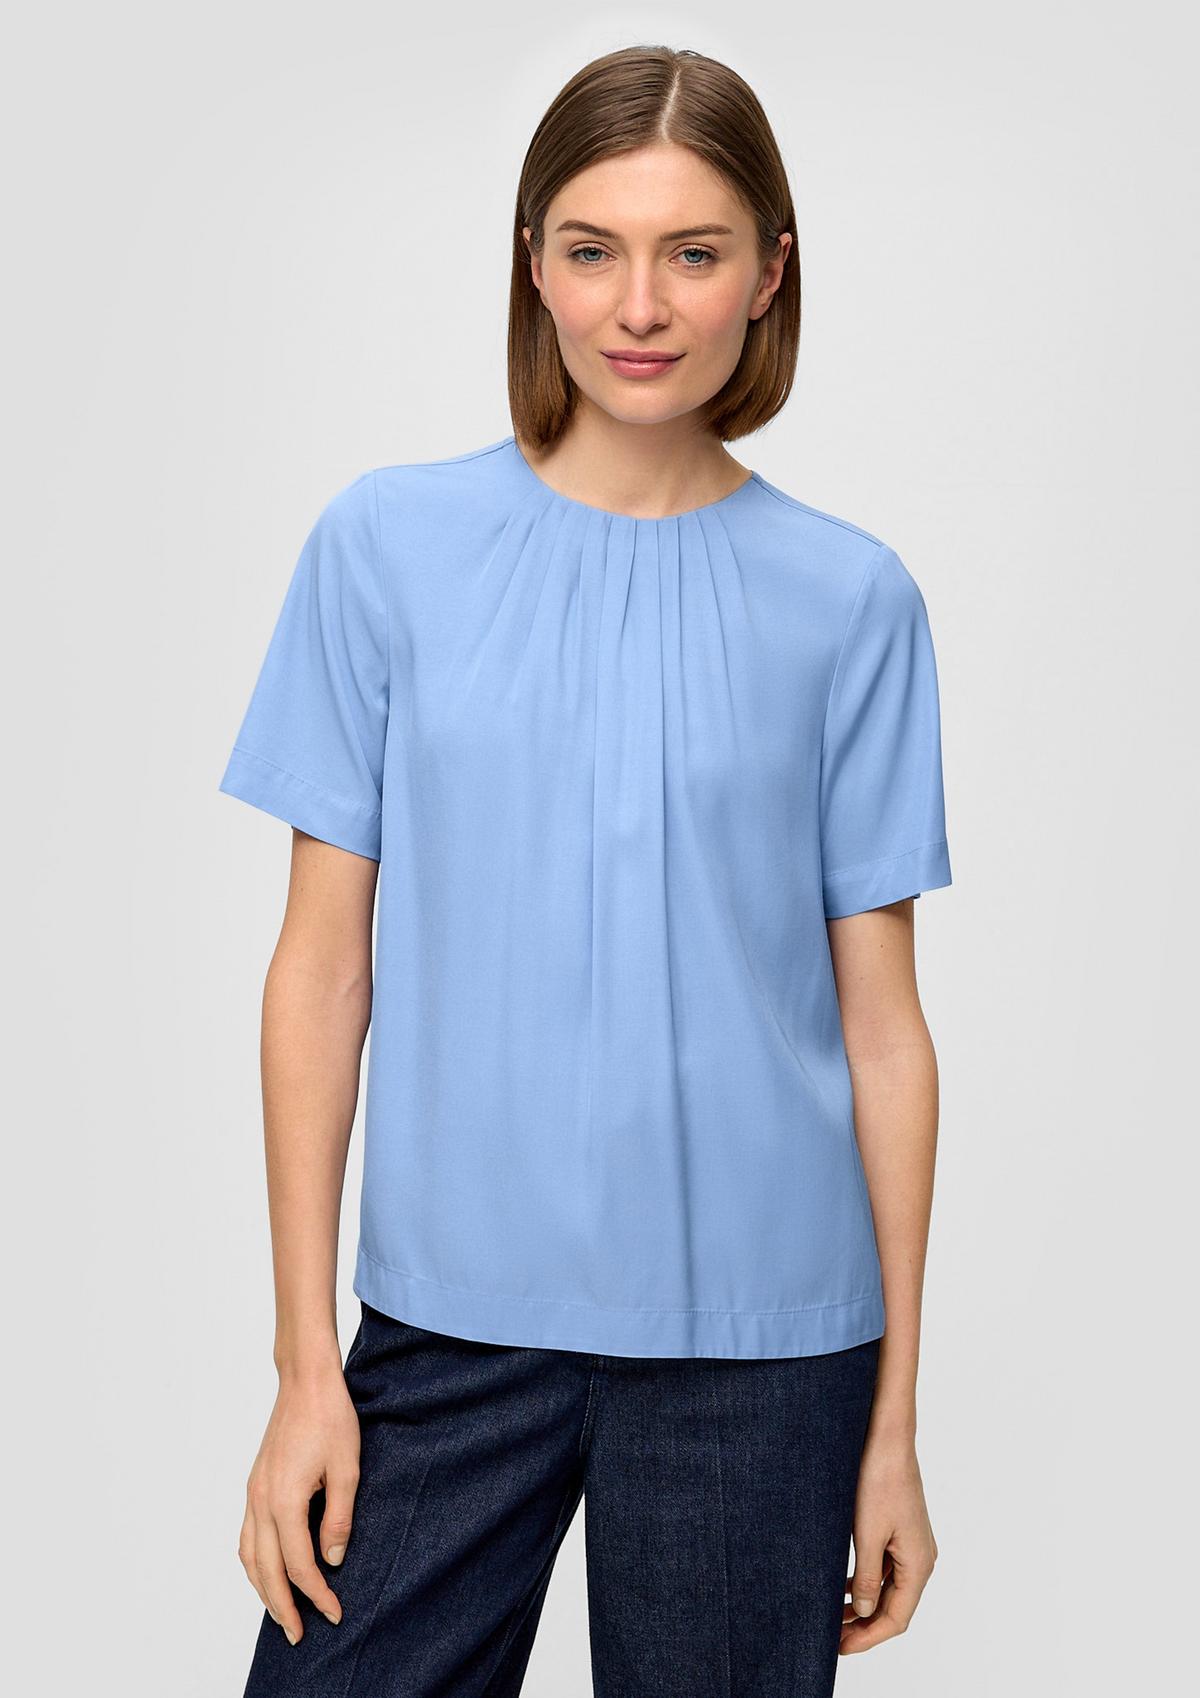 Damen-Kurzarm-Blusen online kaufen